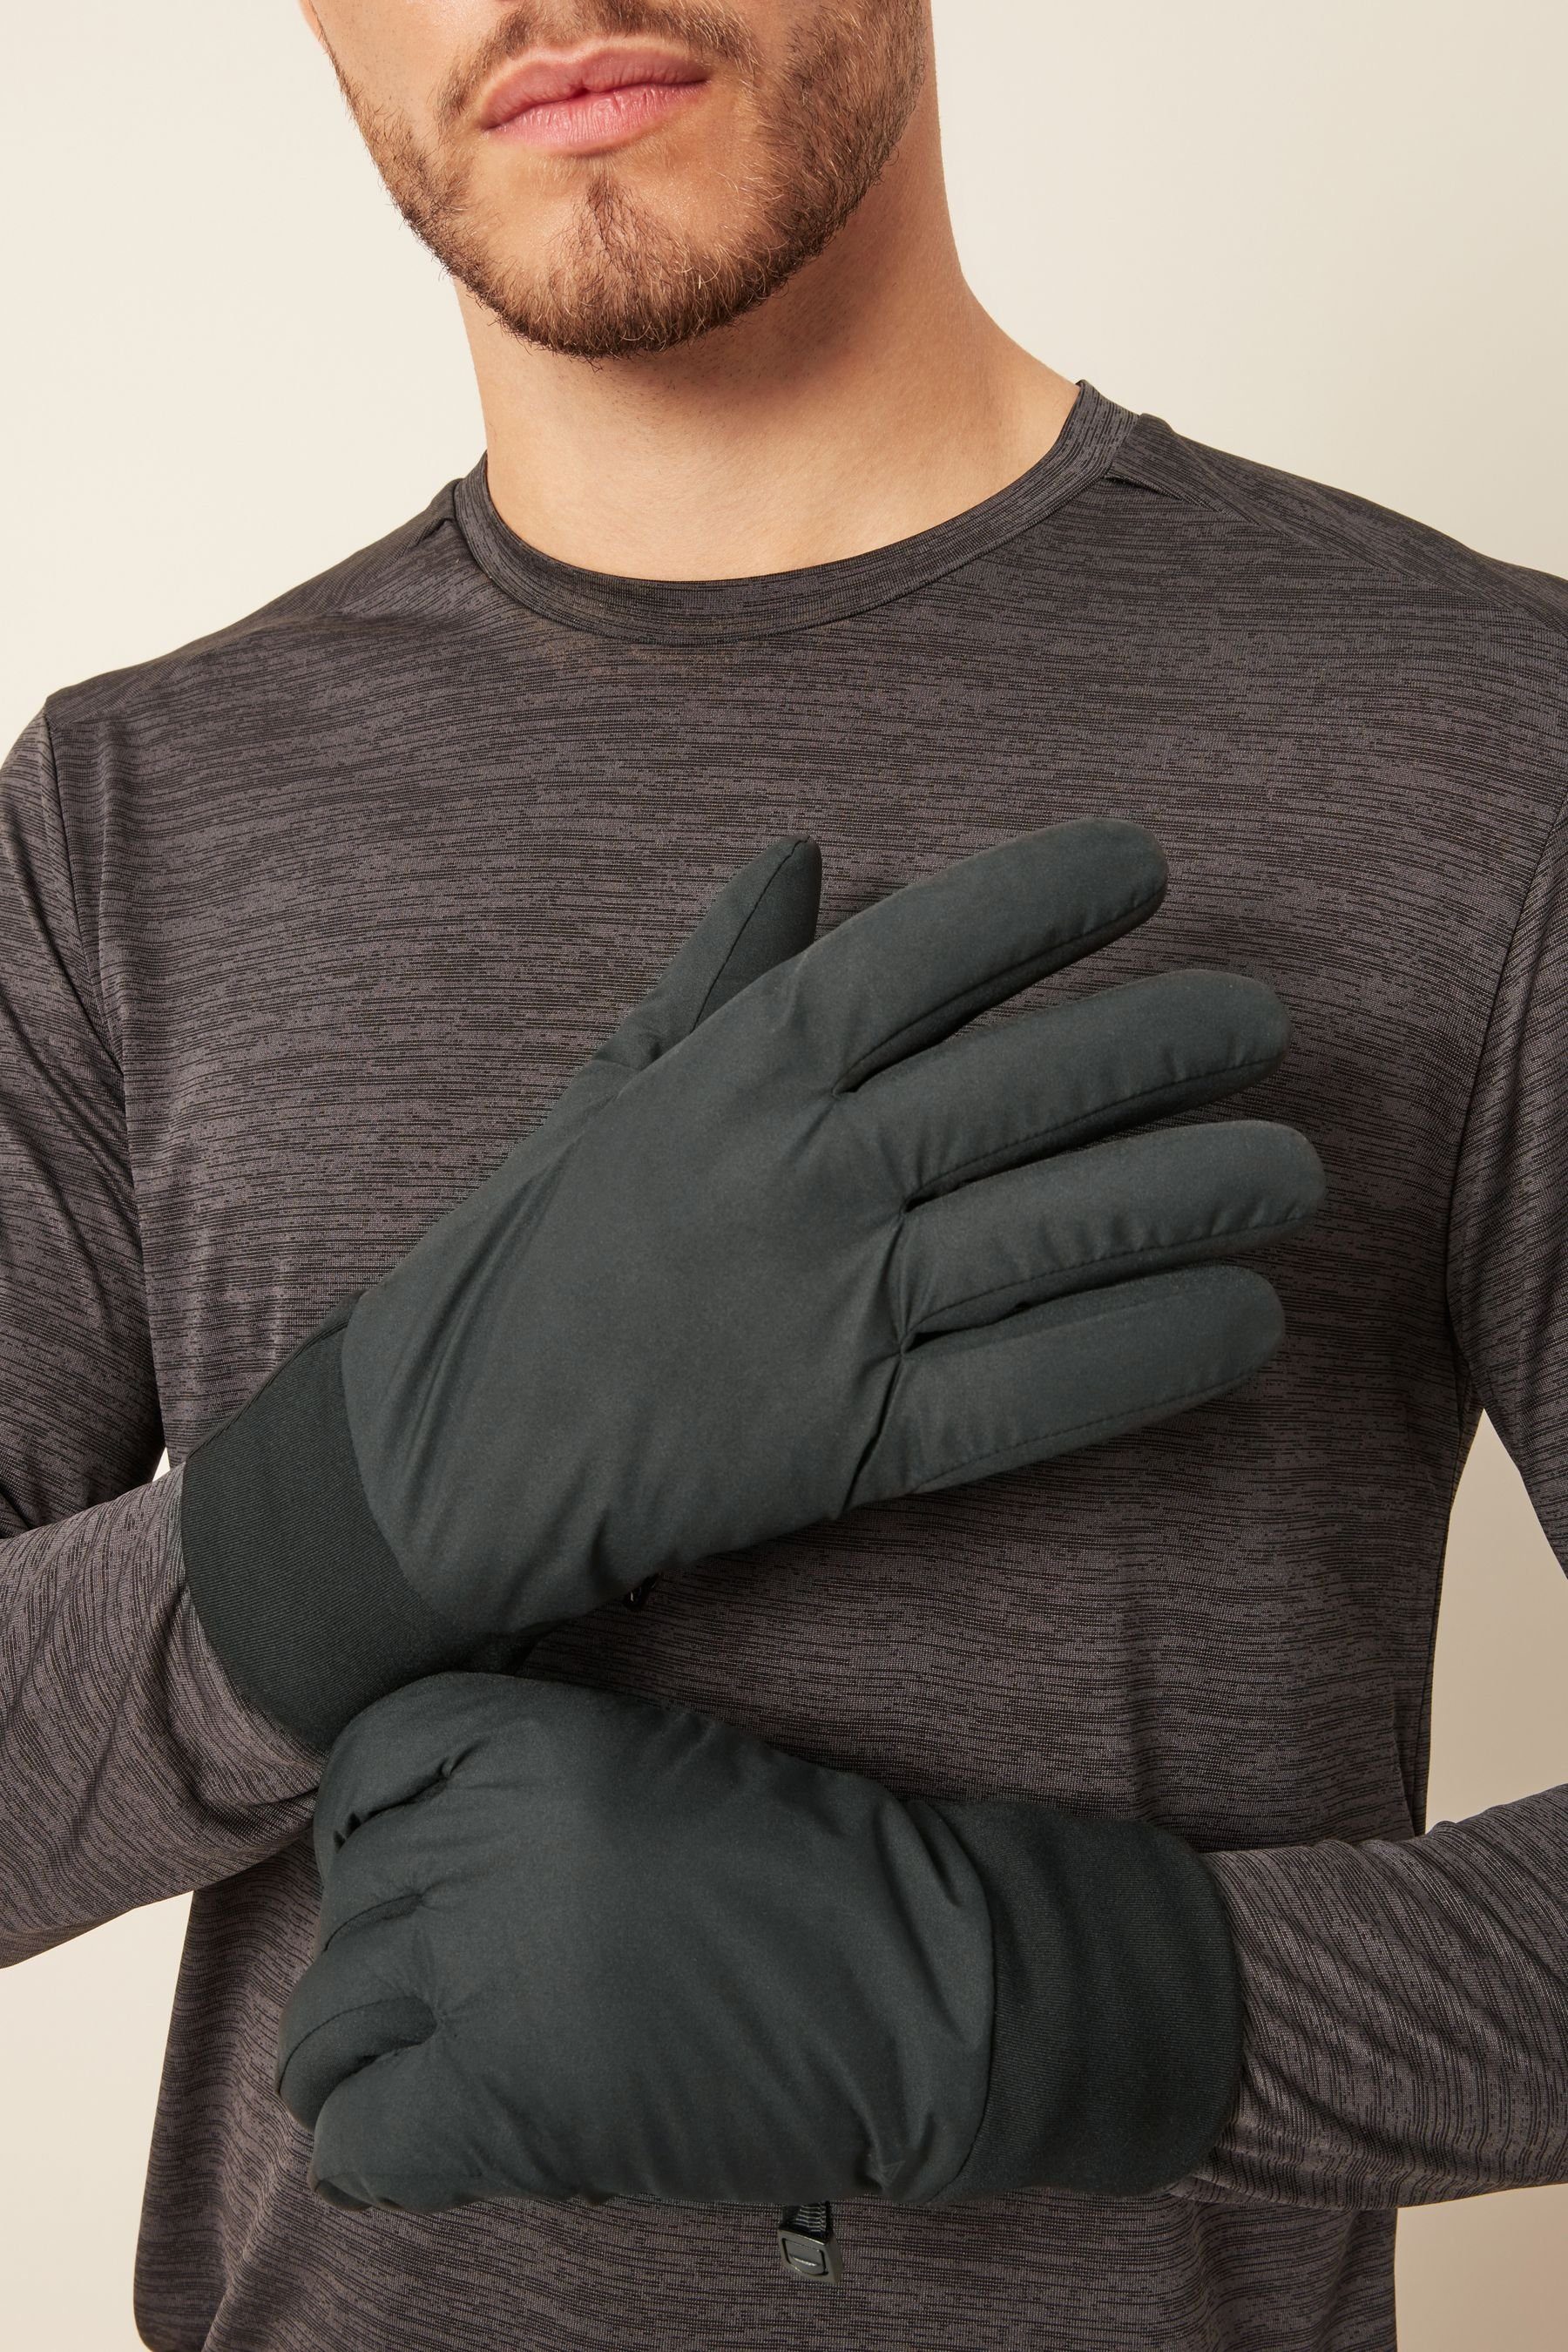 Leichte Handschuhe Active Strickhandschuhe Next